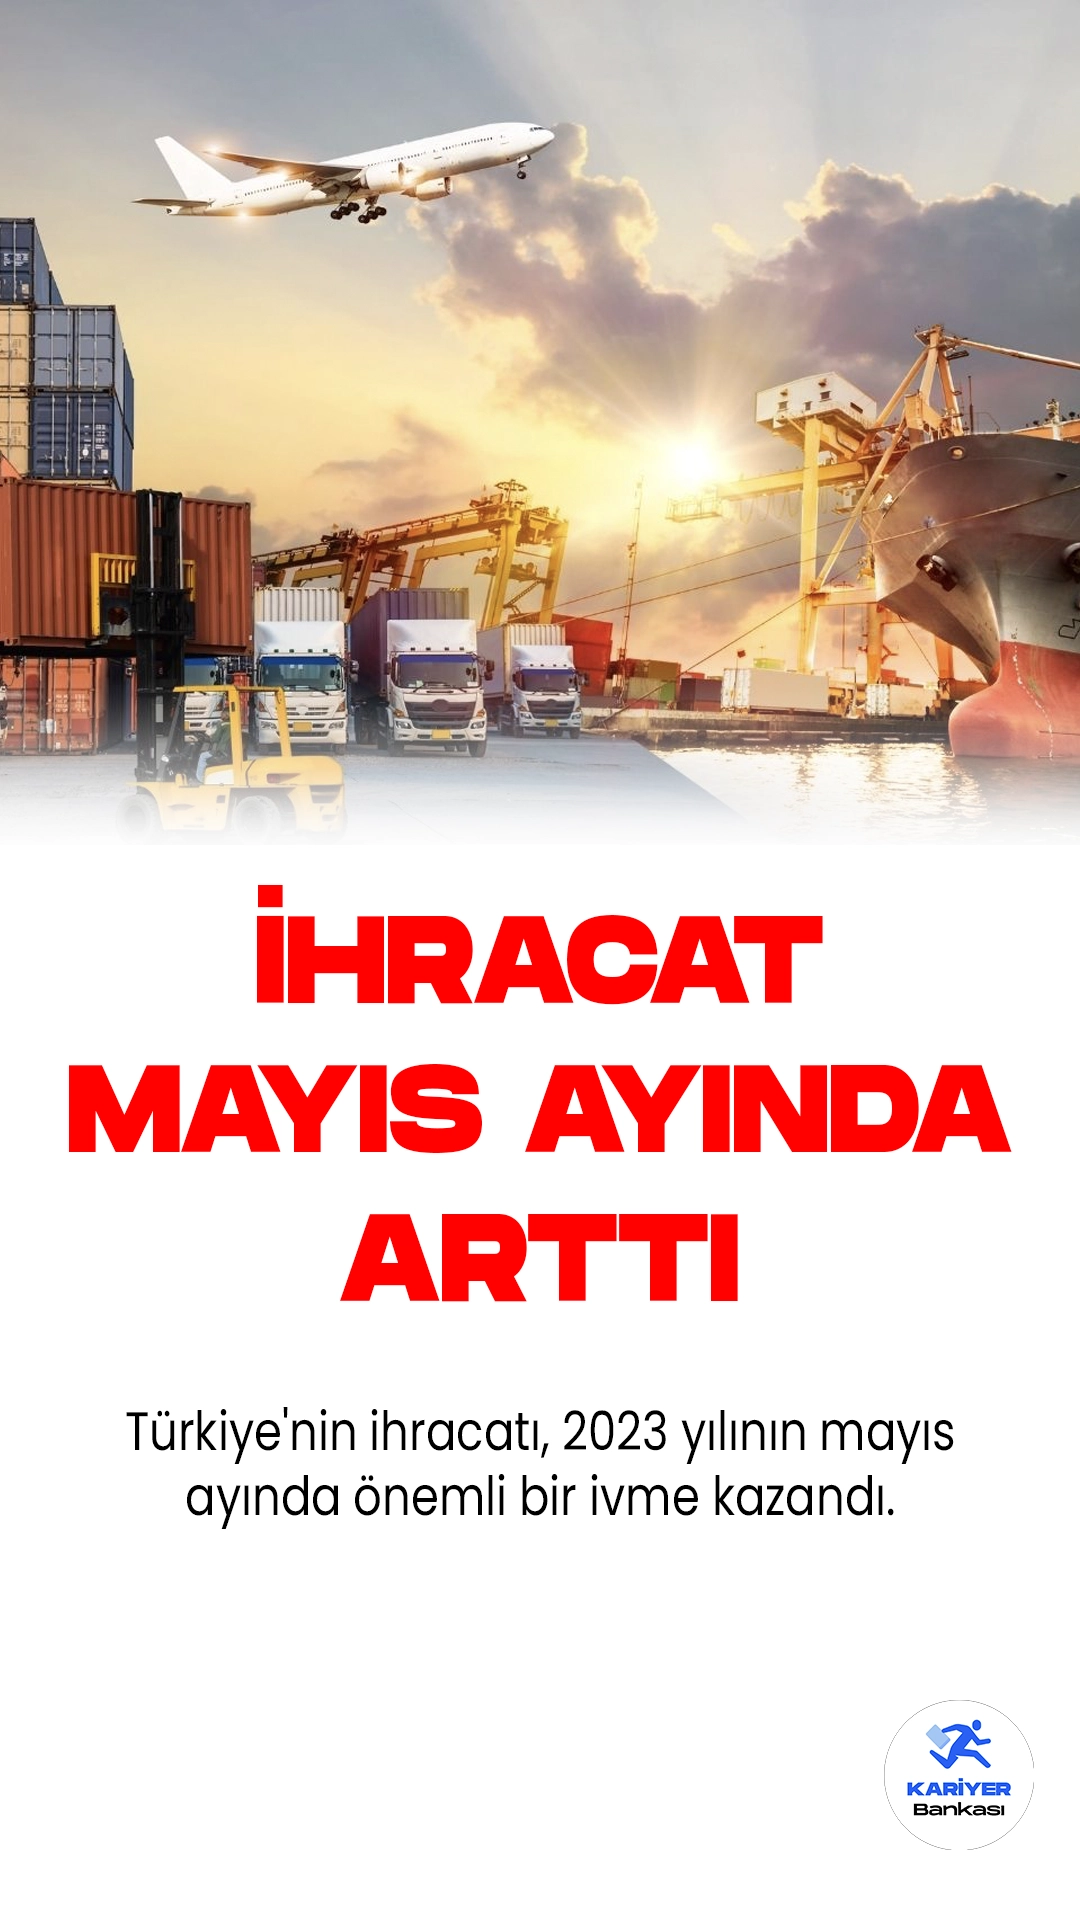 Türkiye'nin ihracatı, 2023 yılının mayıs ayında önemli bir ivme kazandı. Geçtiğimiz yılın aynı dönemine göre yüzde 14,4'lük bir artışla 21 milyar 659 milyon dolarlık bir değere ulaştı. Diğer yandan, Türkiye'nin ithalatı da bu dönemde yükseliş gösterdi. İthalat, yüzde 15,5'lik bir artışla 34 milyar 186 milyon dolara çıktı.